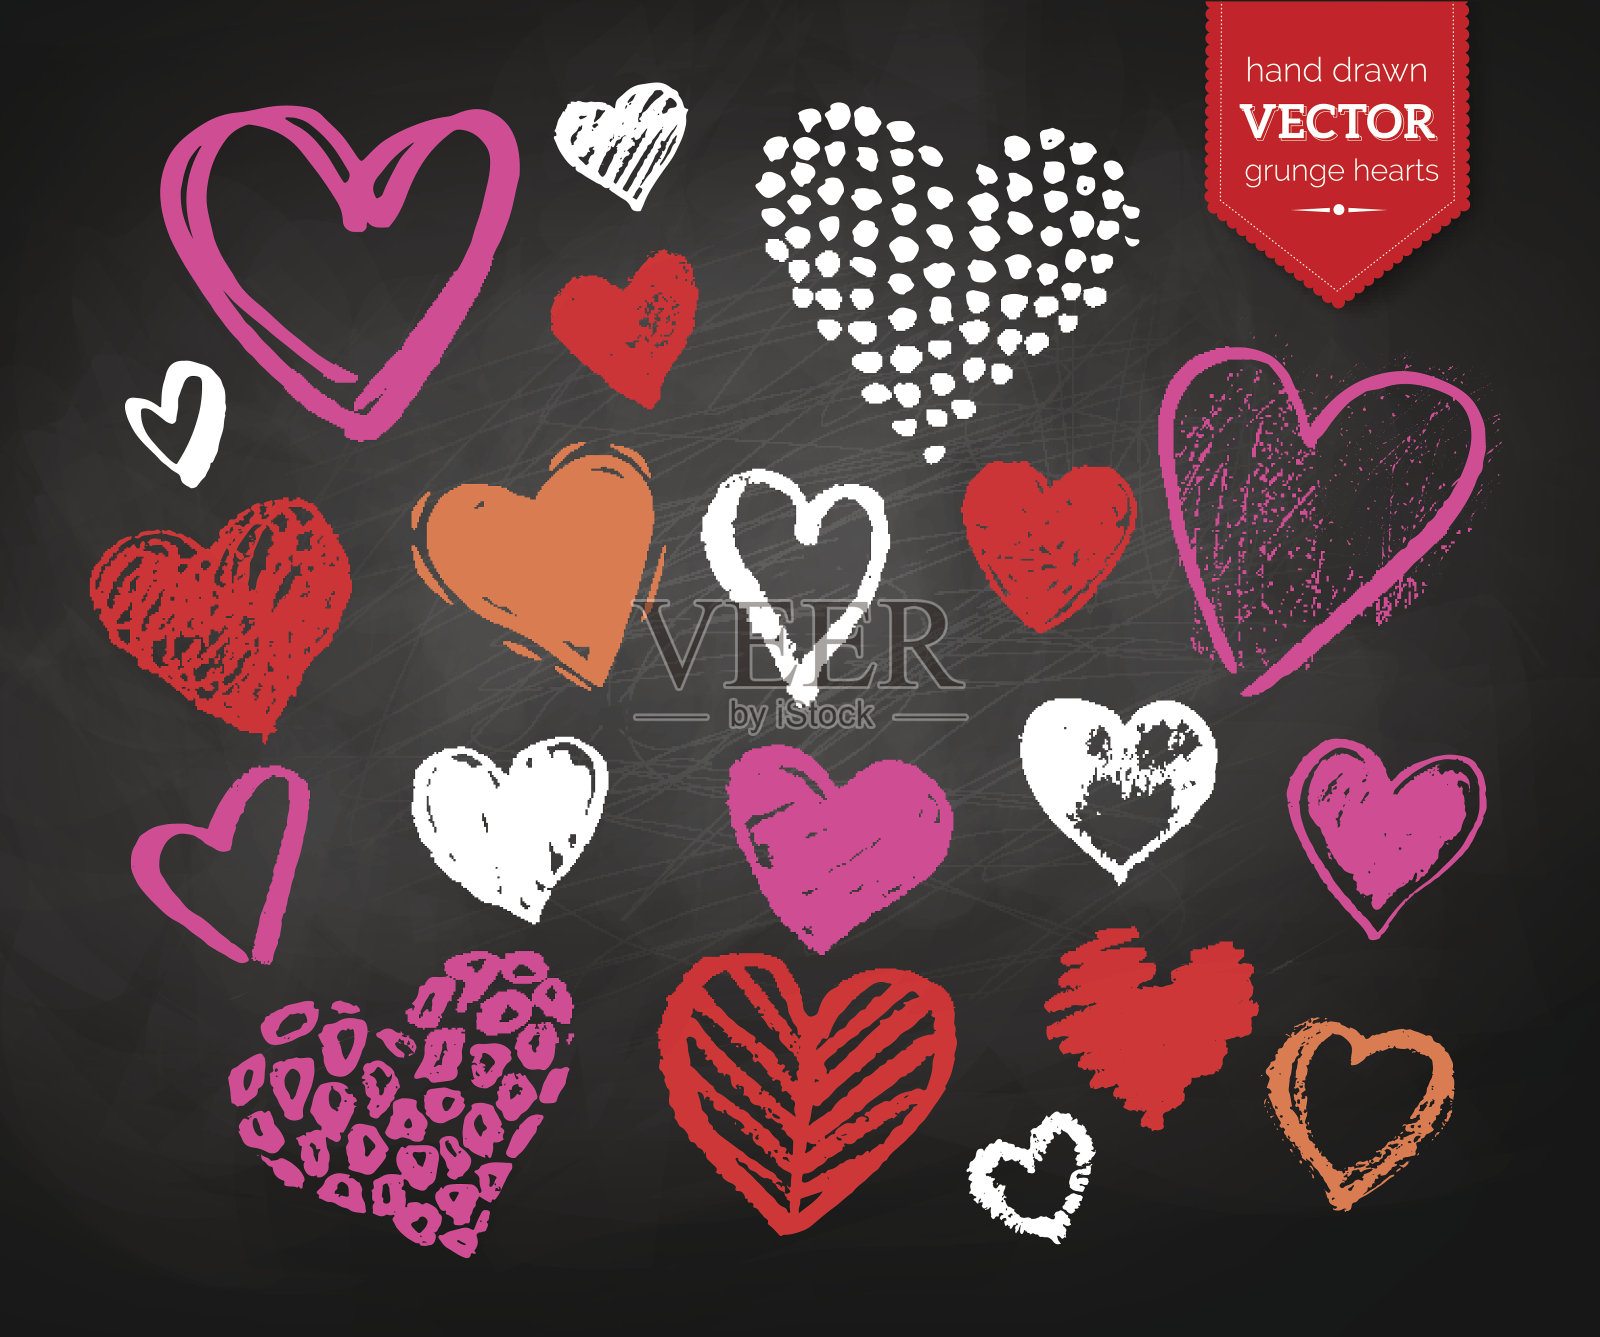 彩色粉笔画出了情人节的心插画图片素材